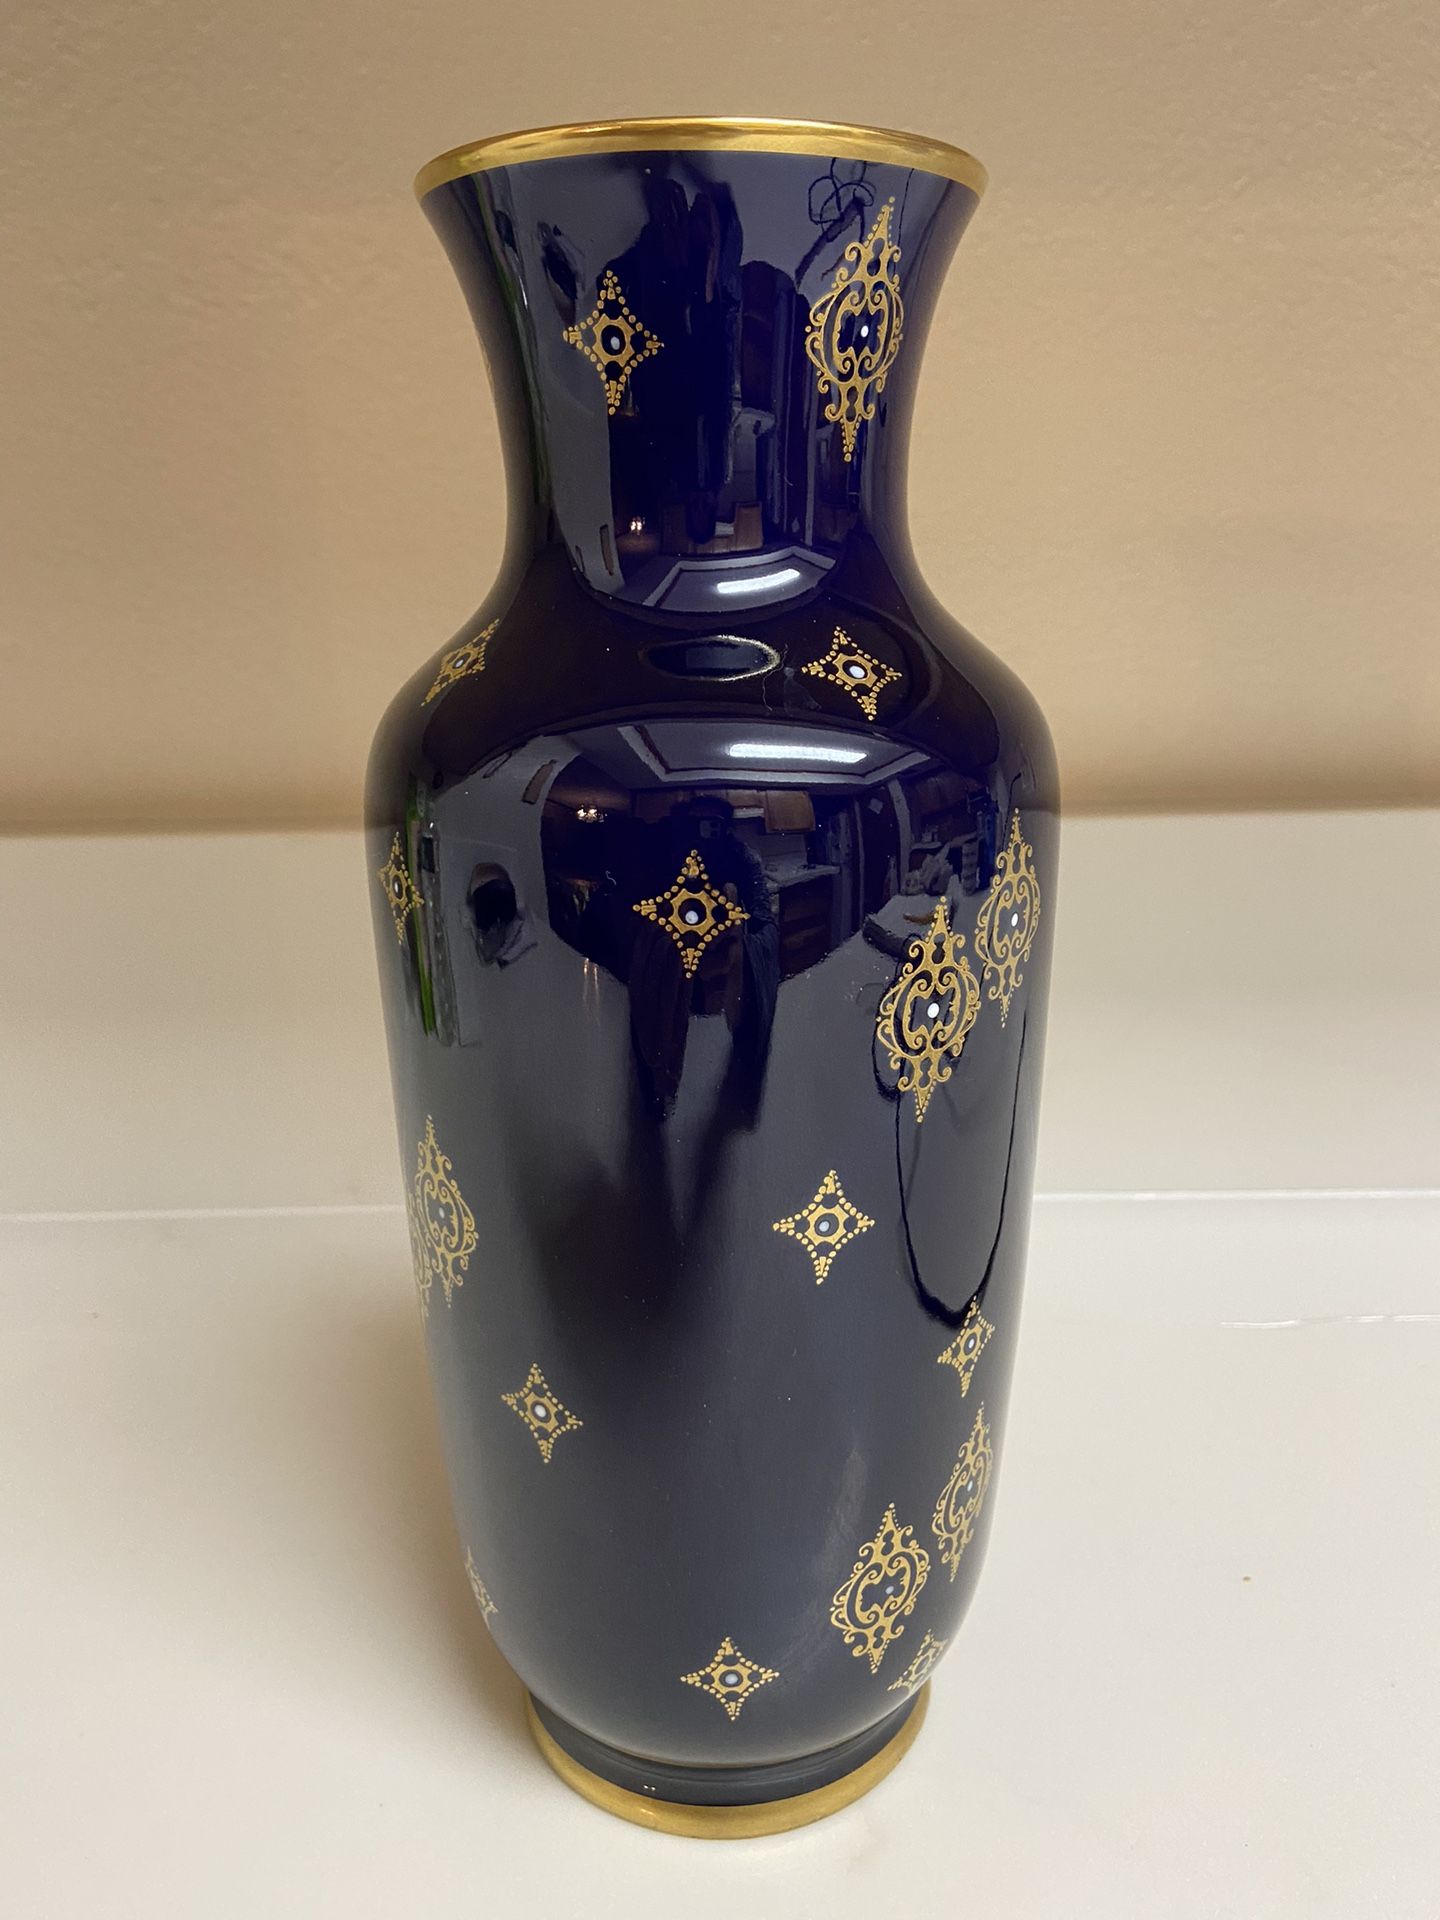 Vintage Echt Kobalt Flower Vase 10 1/2” Made In Germany